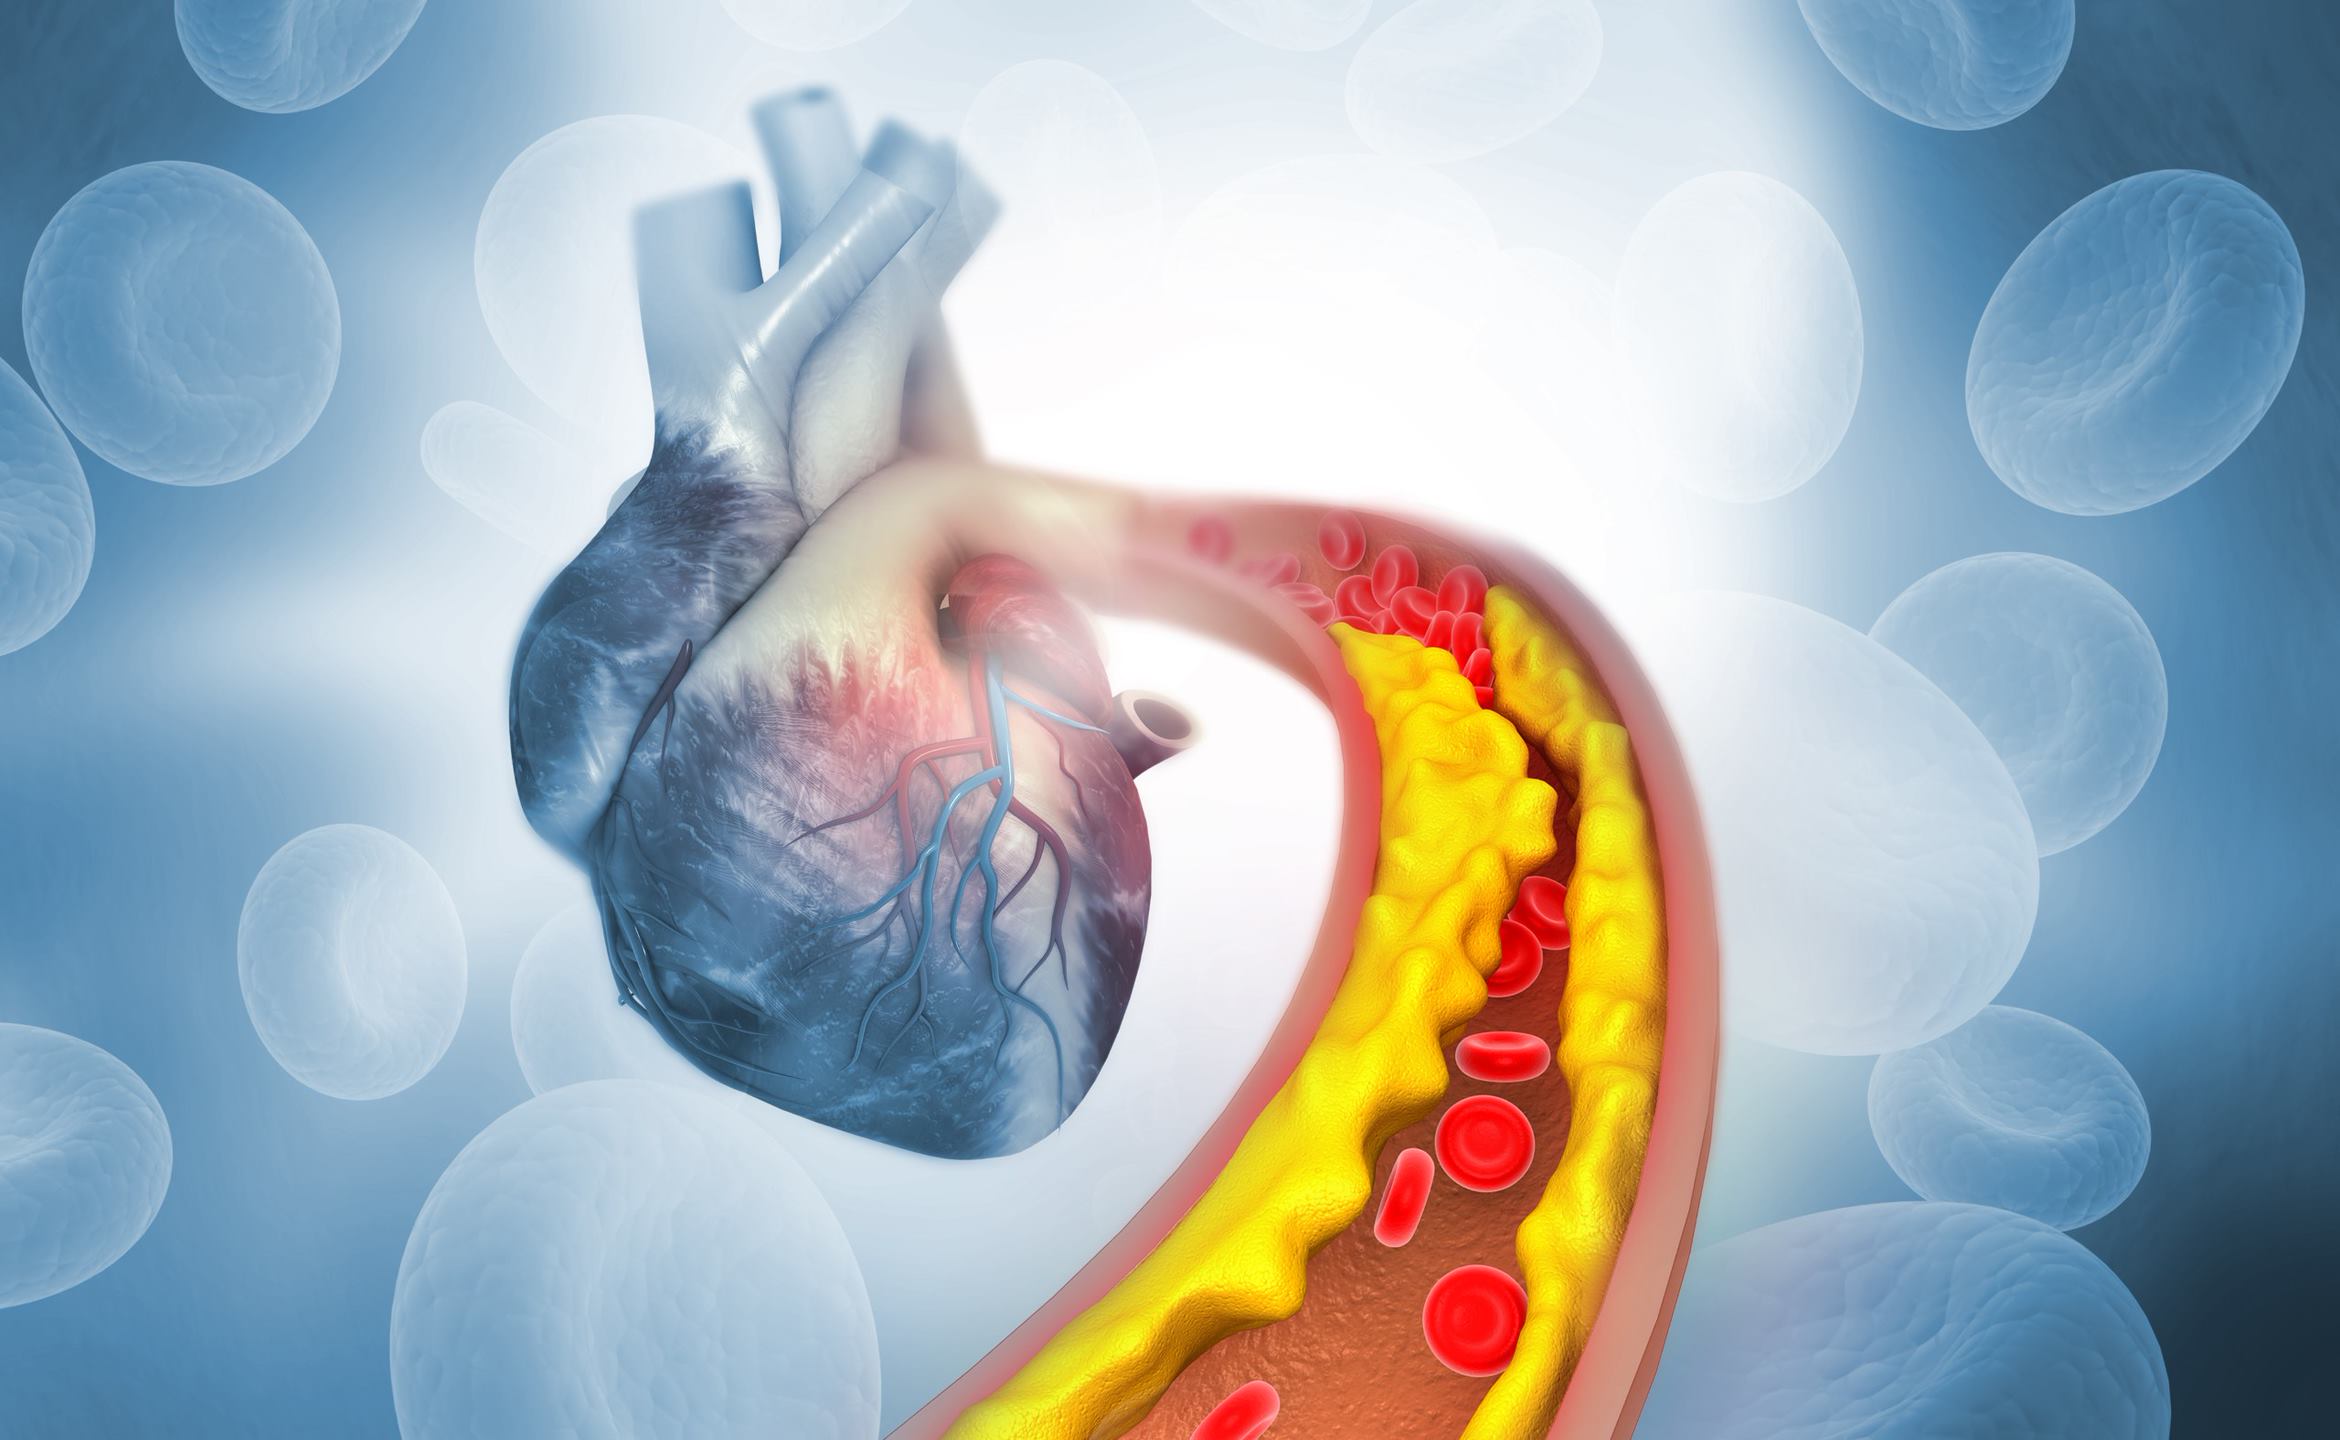 Plaque de cholestérol dans une artère avec anatomie du cœur humain Illustration 3d